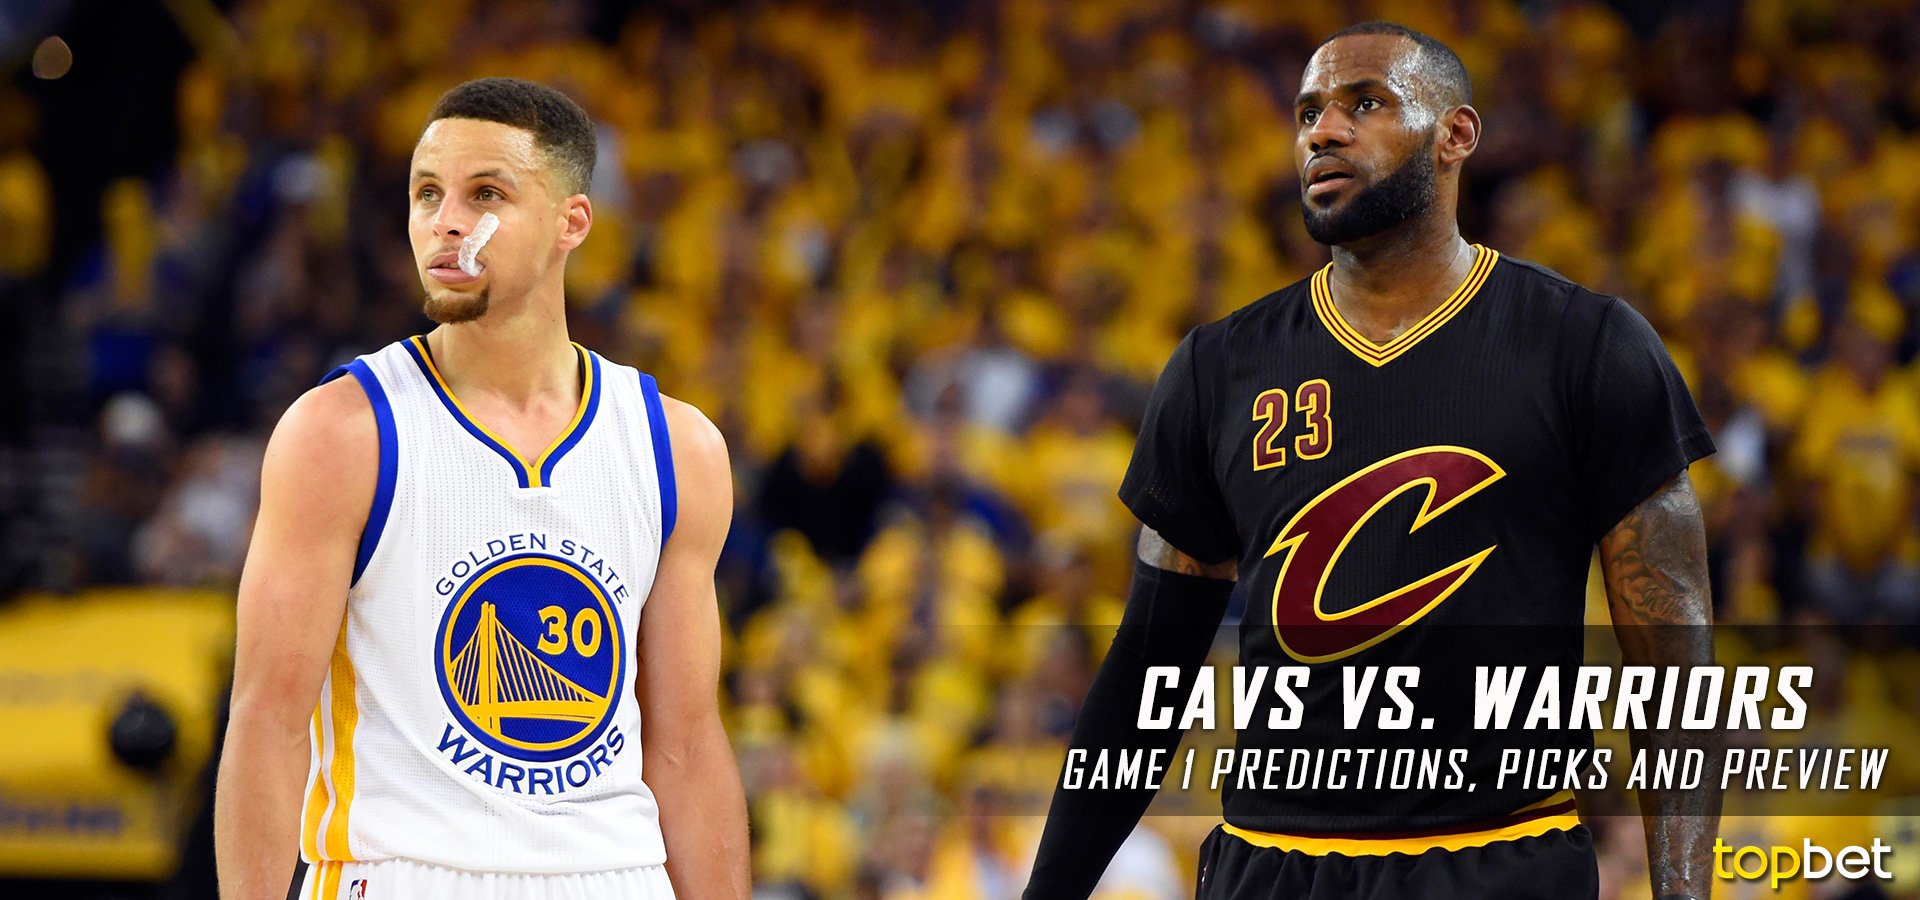 Cavs vs Warriors Game 1 Predictions & Picks: 2017 NBA Finals